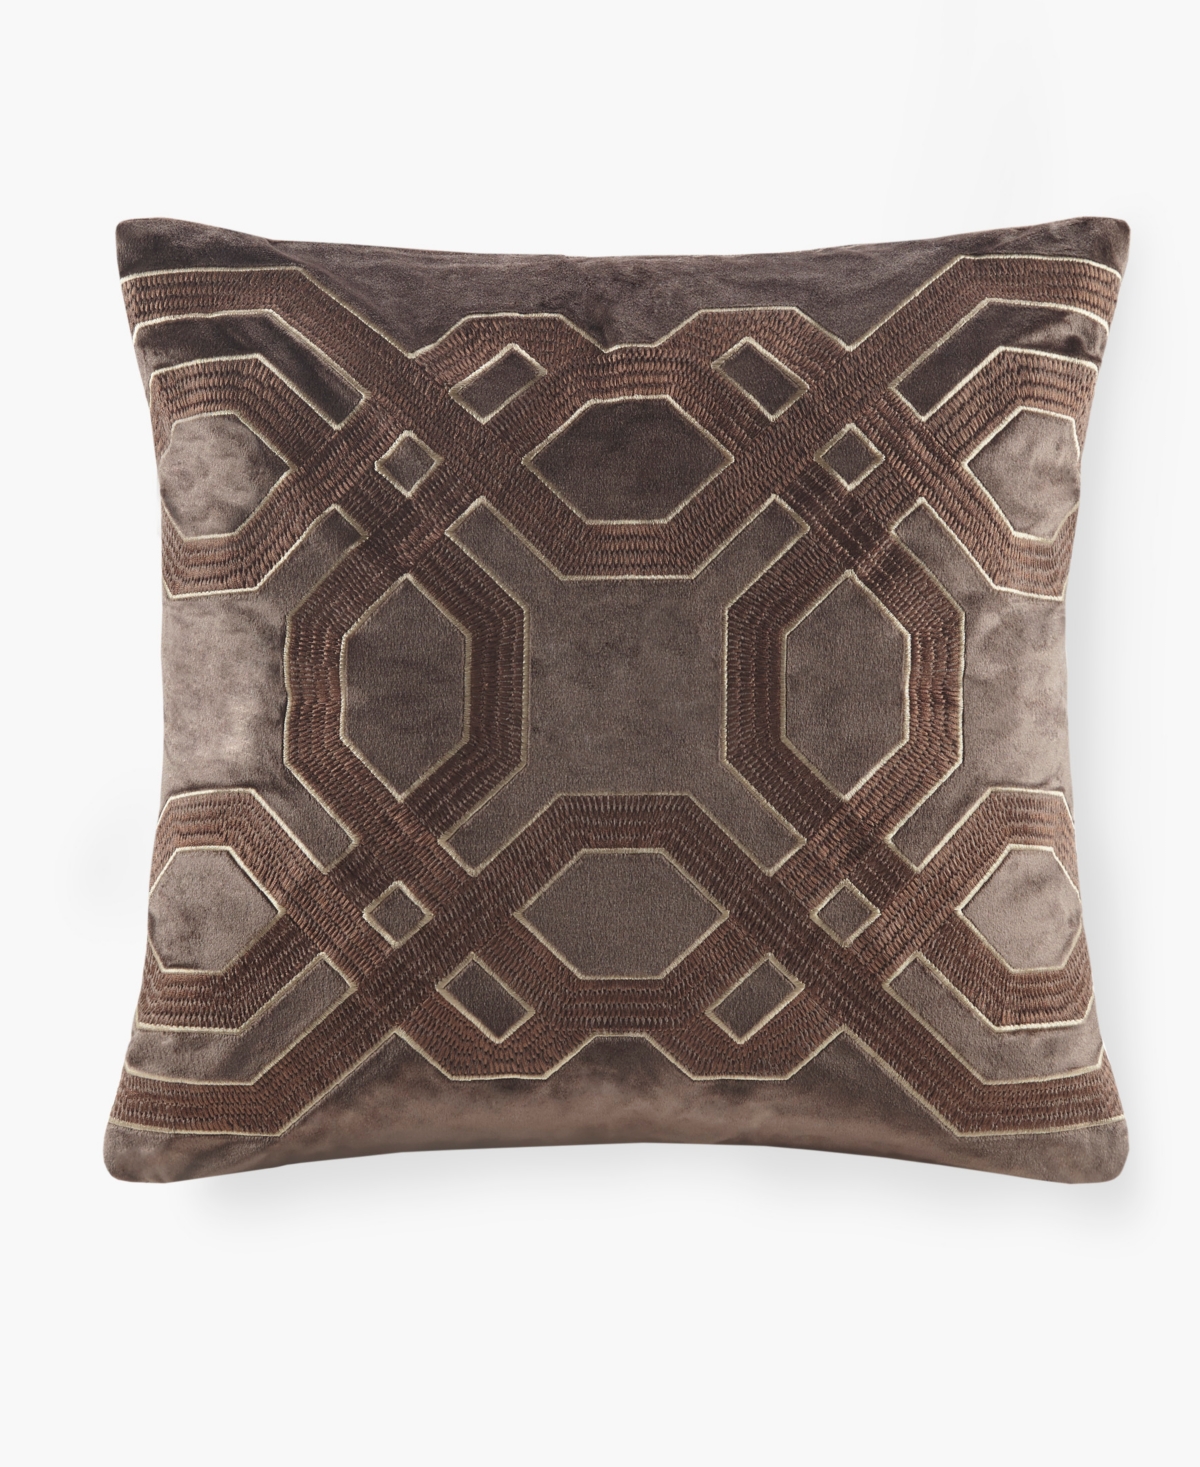 Croscill Biron Square Decorative Pillow, 18" X 18" In Brown